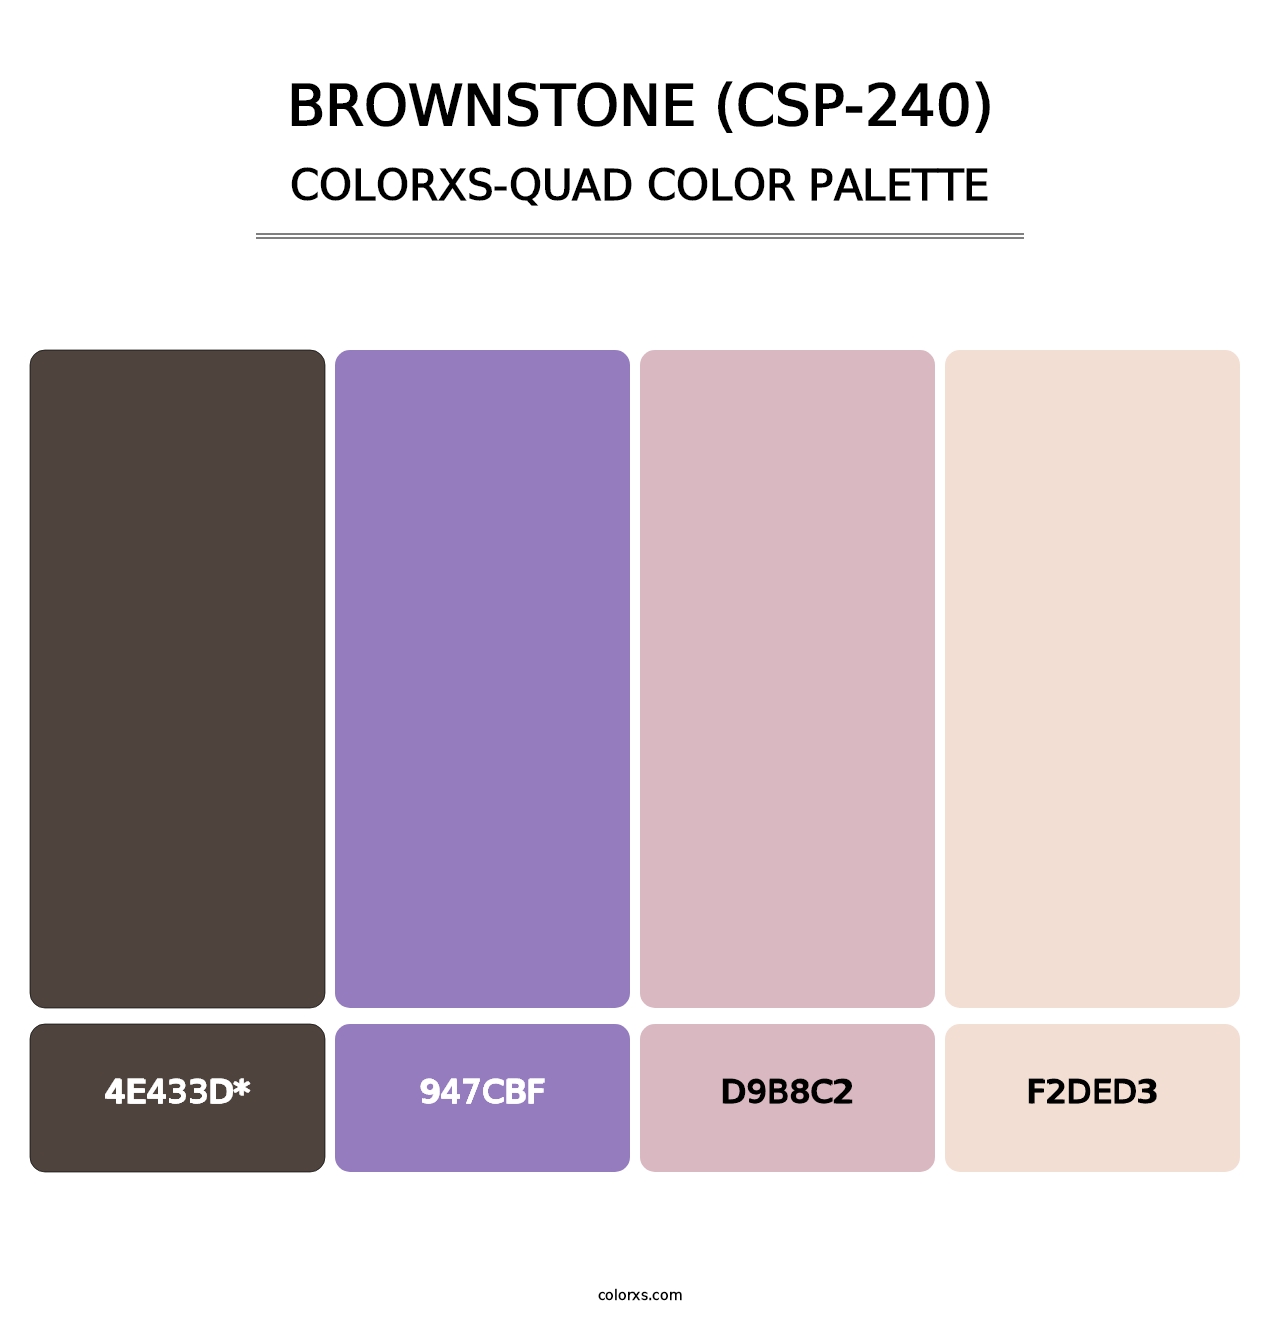 Brownstone (CSP-240) - Colorxs Quad Palette